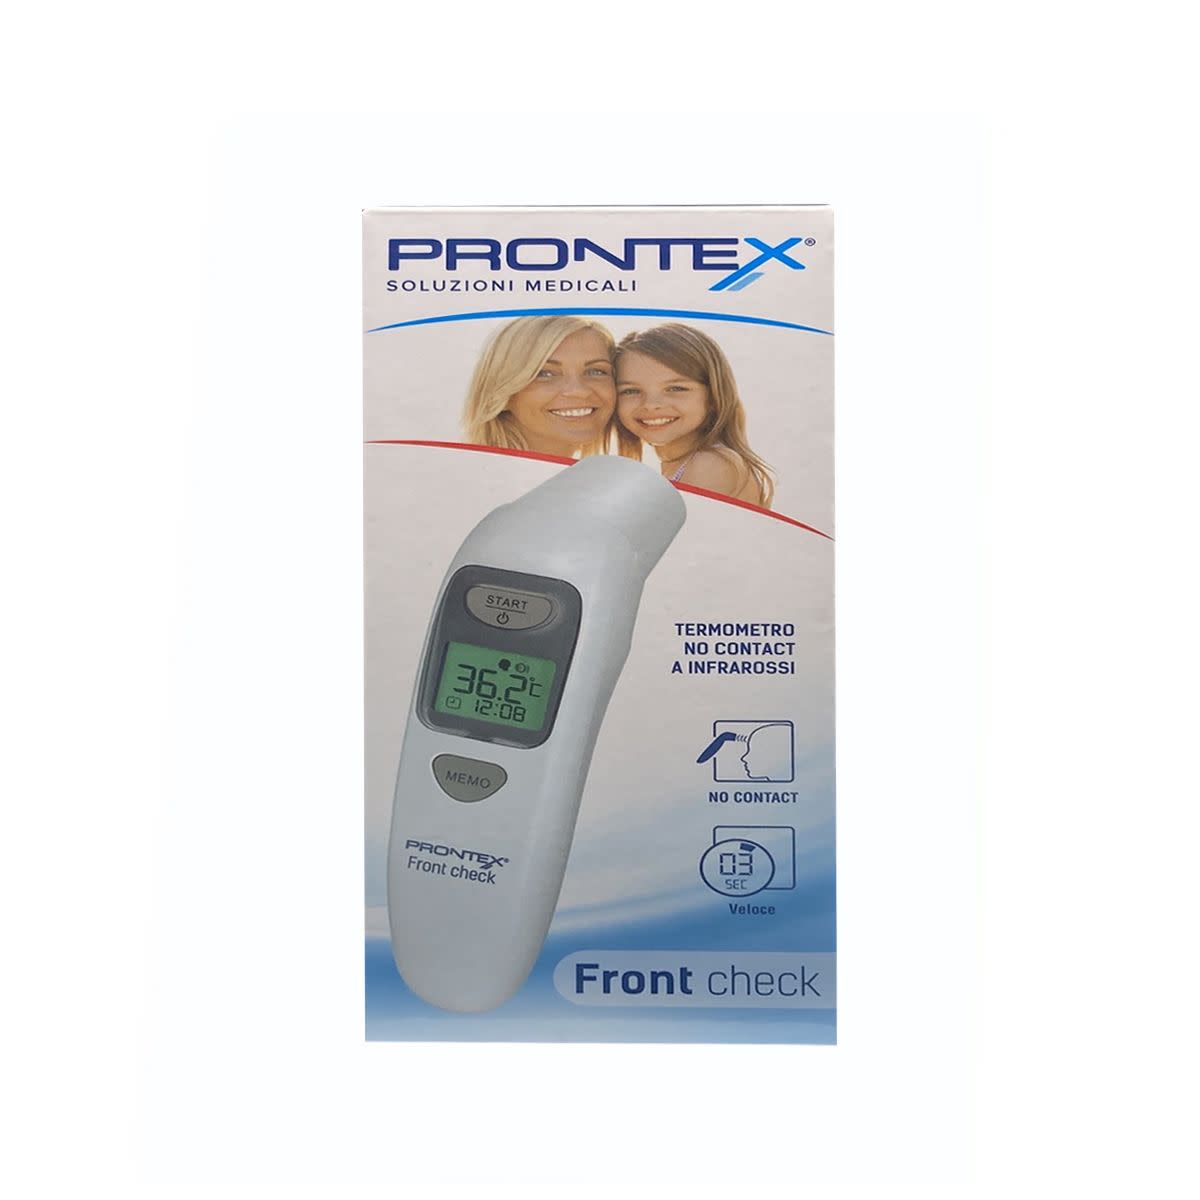 939574719 - Prontex Front Check Termometro a infrarossi - 4724741_3.jpg